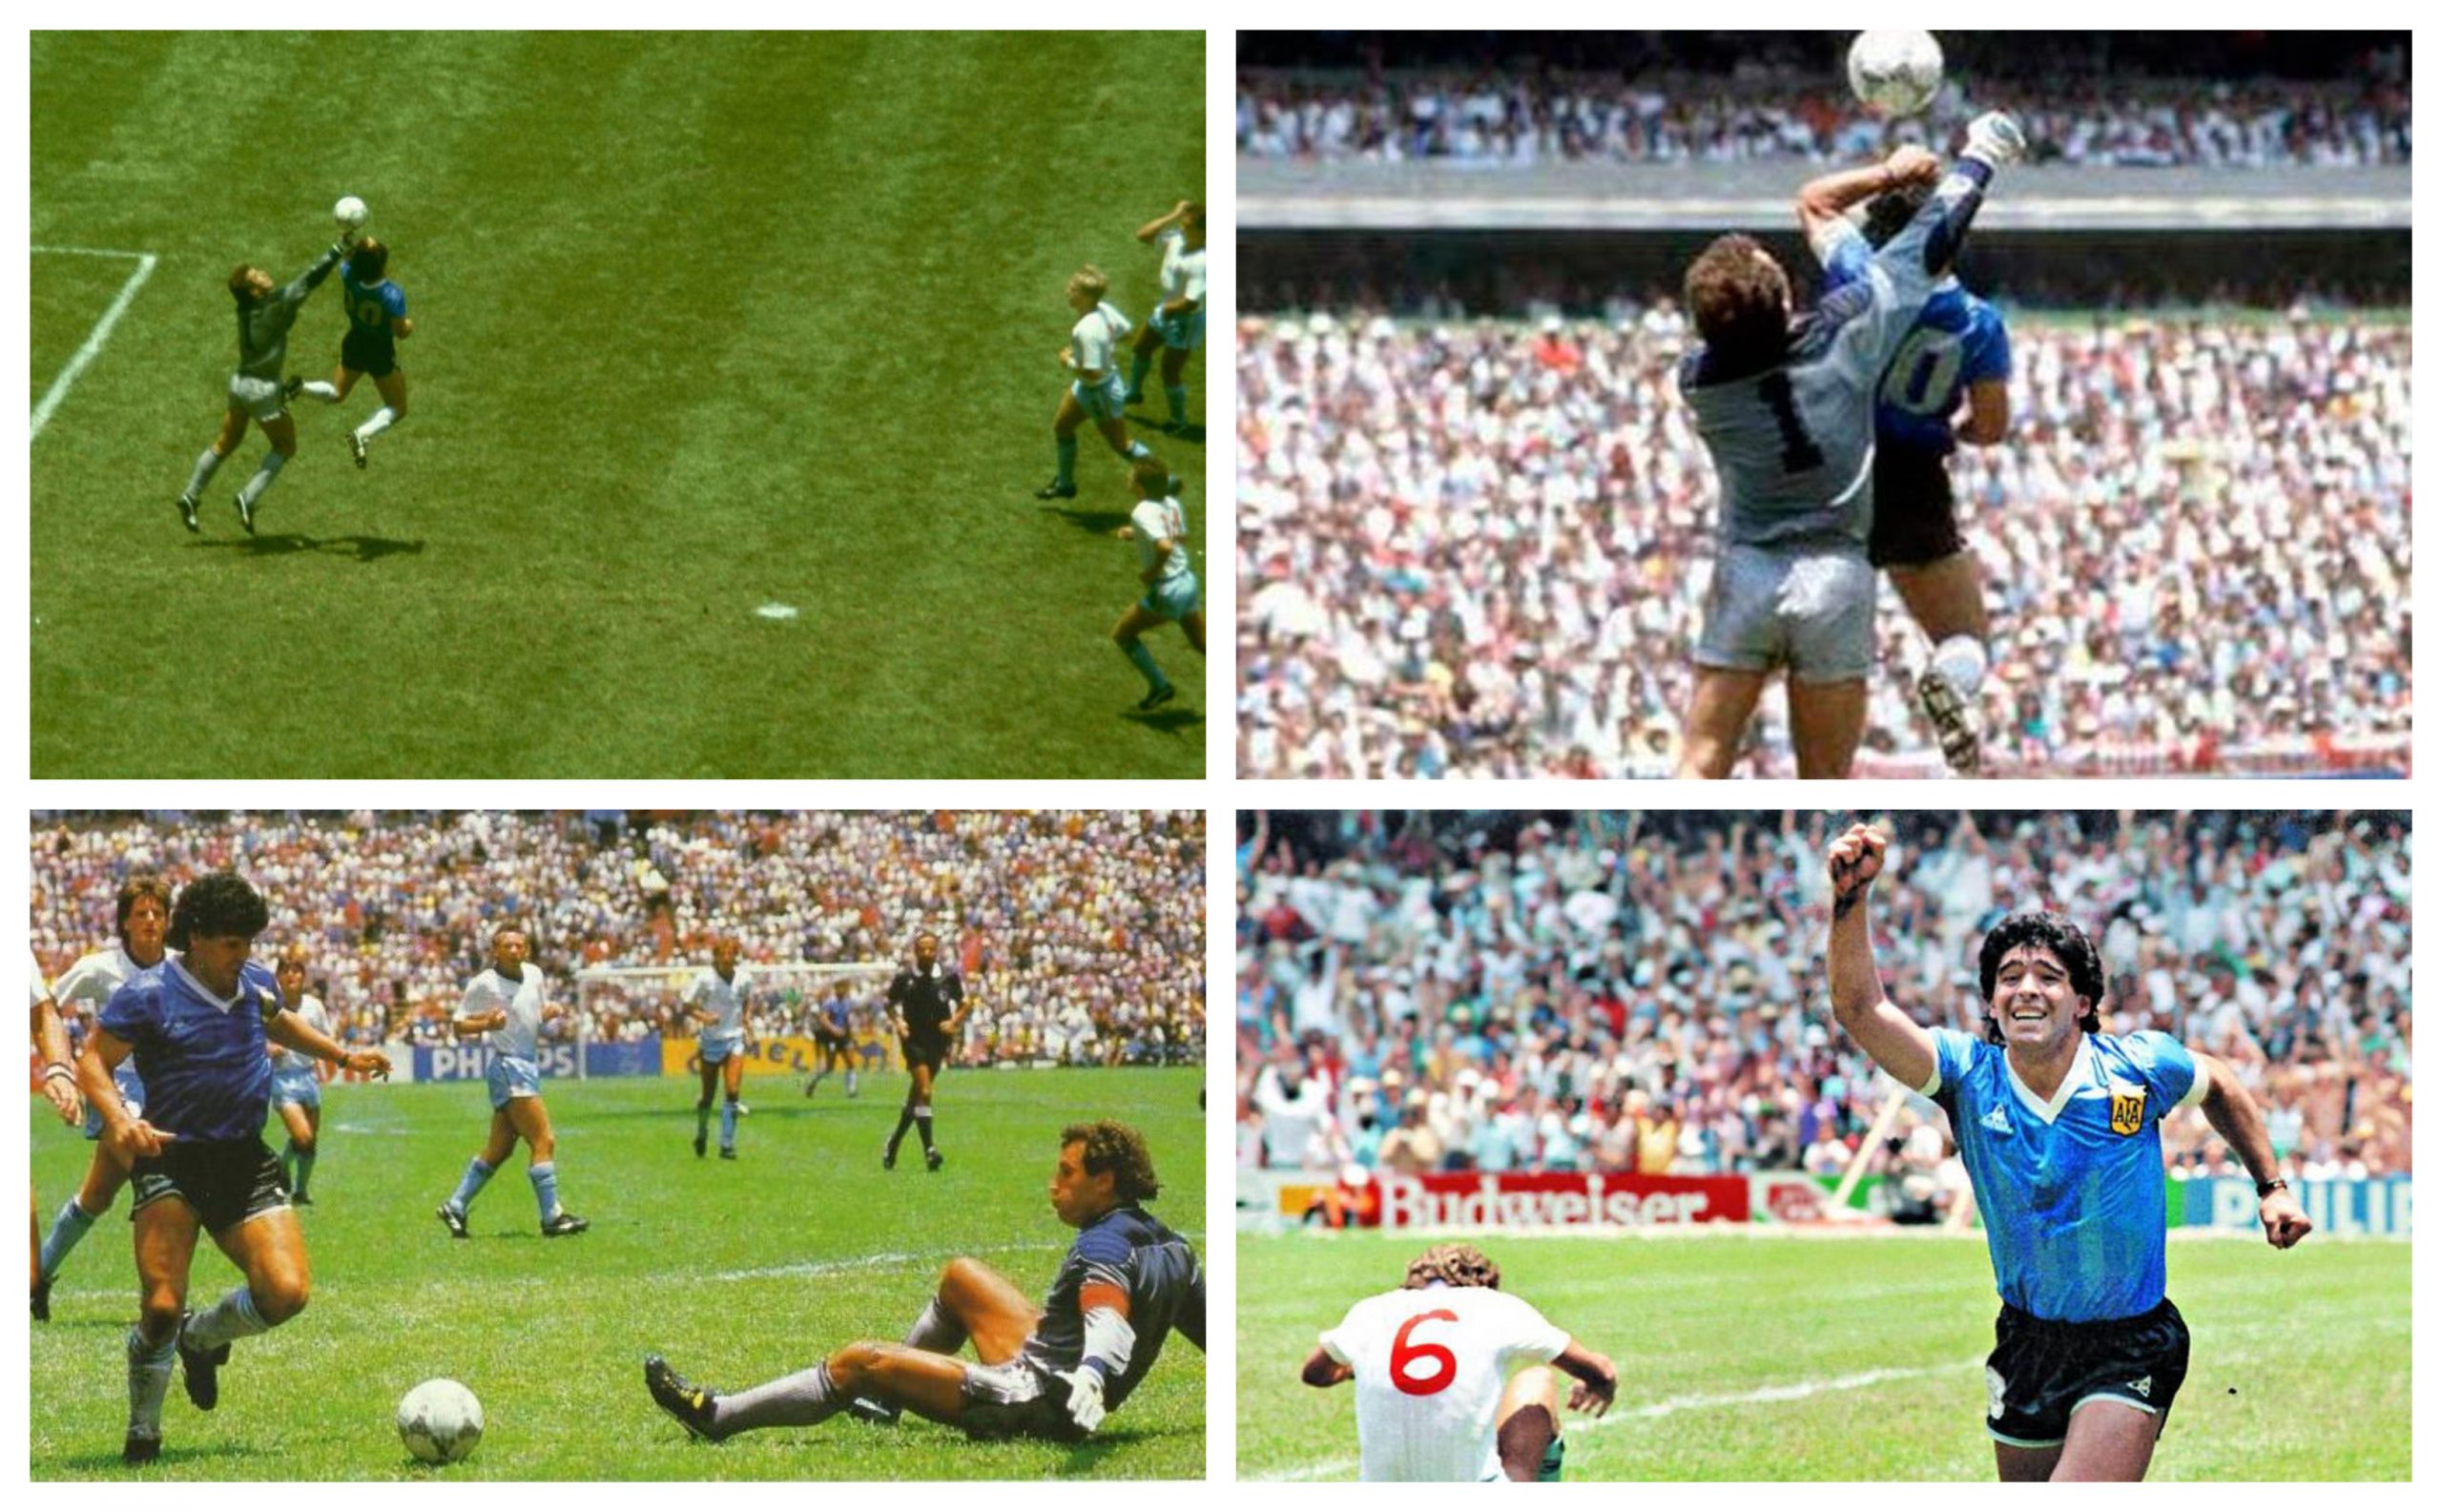 El 22 de junio de 1986 Diego Armando Maradona anotó para Argentina el gol de "La Mano de Dios" y "El Gol del Siglo", en los cuartos de final de la Copa del Mundo de México, contra Inglaterra. (Foto: Twitter))